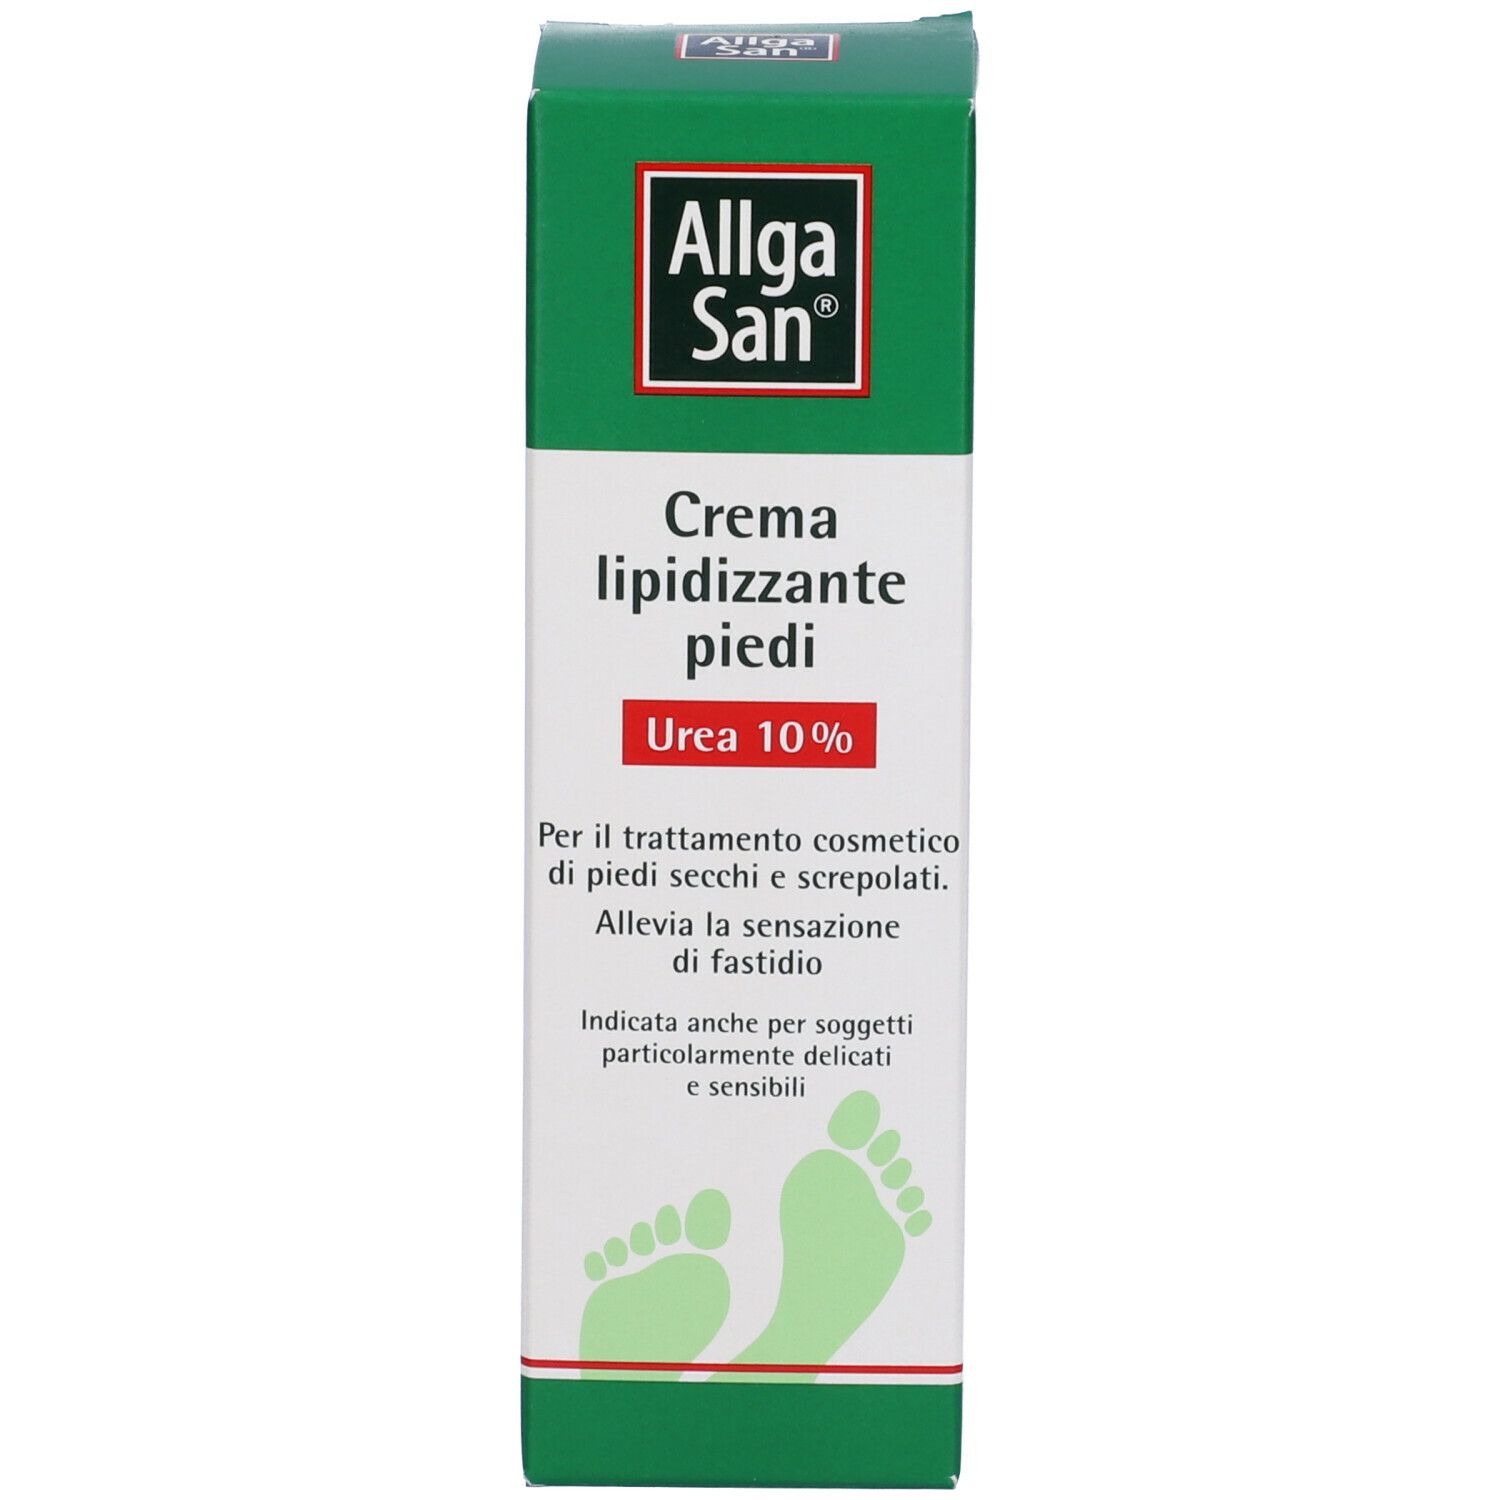 Allga San® Crema Lipidizzante Piedi Urea 10%